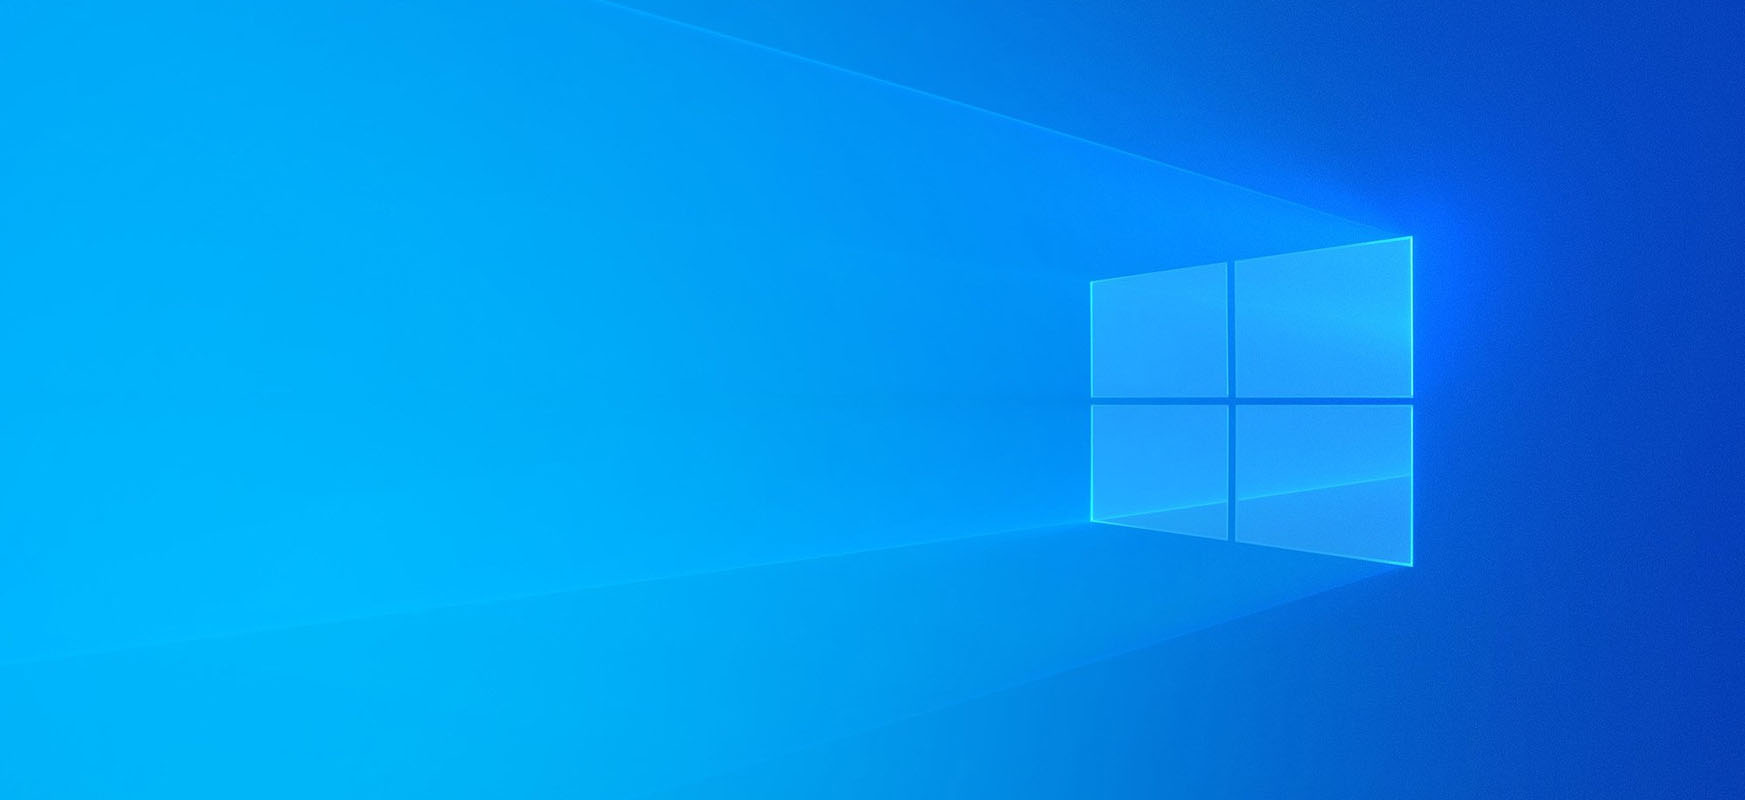 Windows 10 funtzio berririk egin gabe, abisatu berri arte. Informatikari profesionalek gauza garrantzitsu gehiago dituzte orain